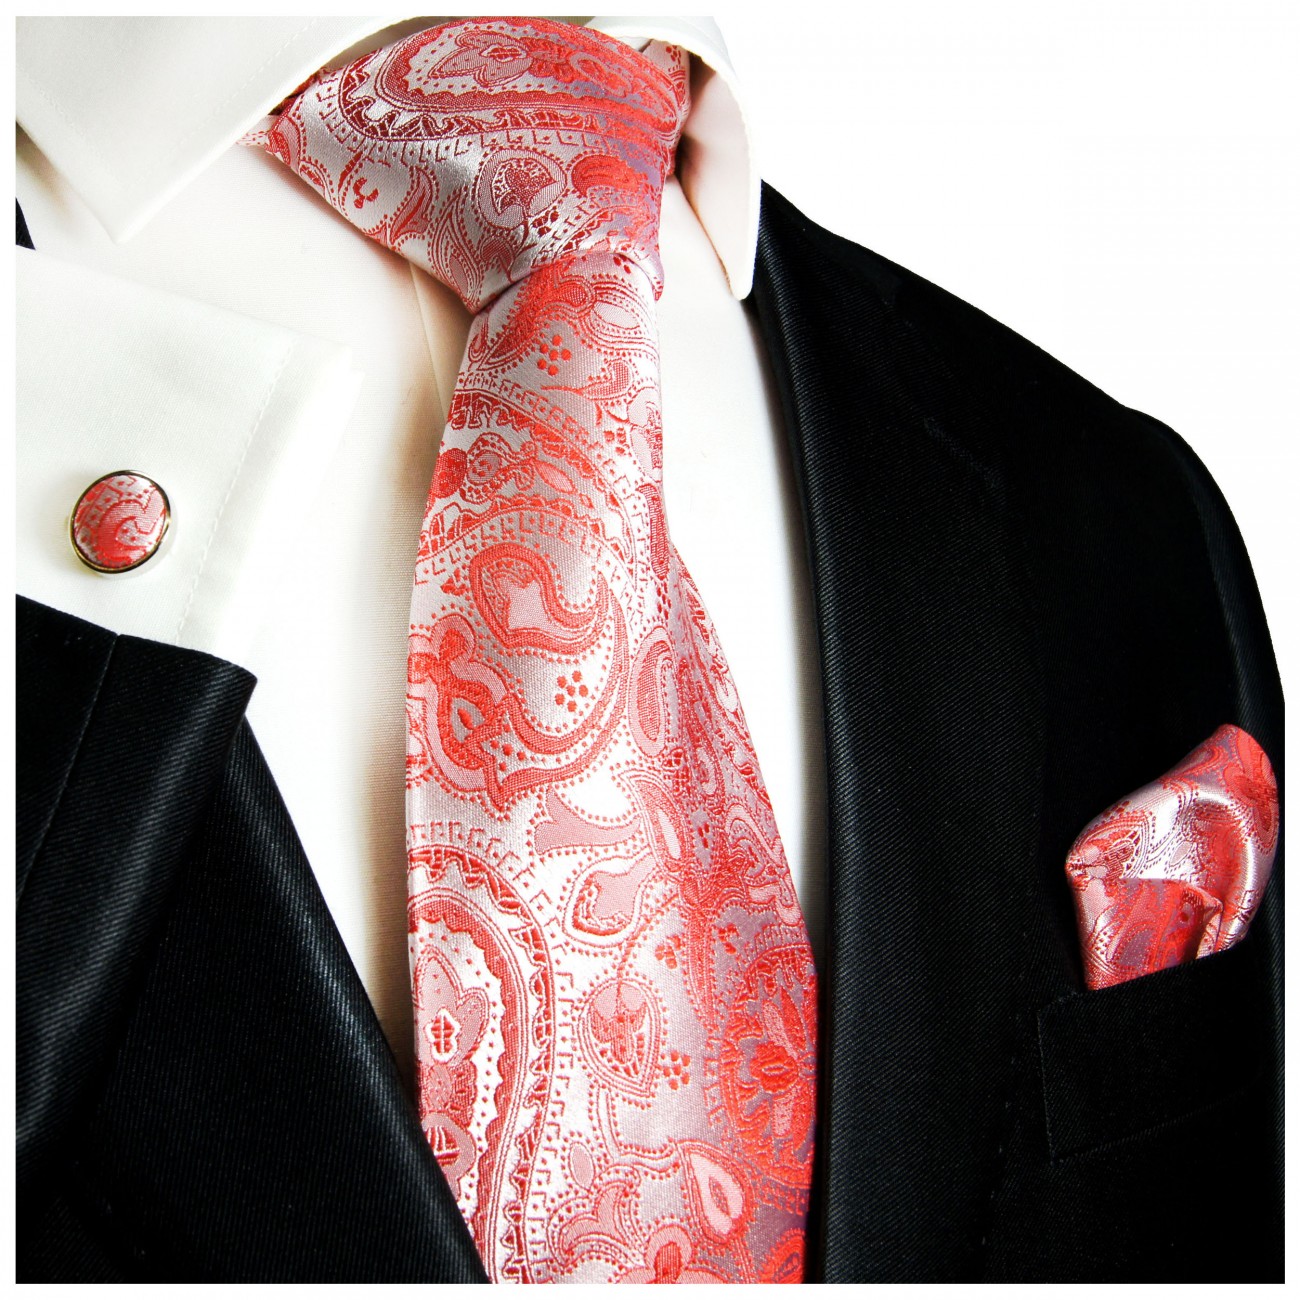 Große Rabatte diese Woche Krawatte rot paisley Seide - | Paul BESTELLEN Malone Shop JETZT 338